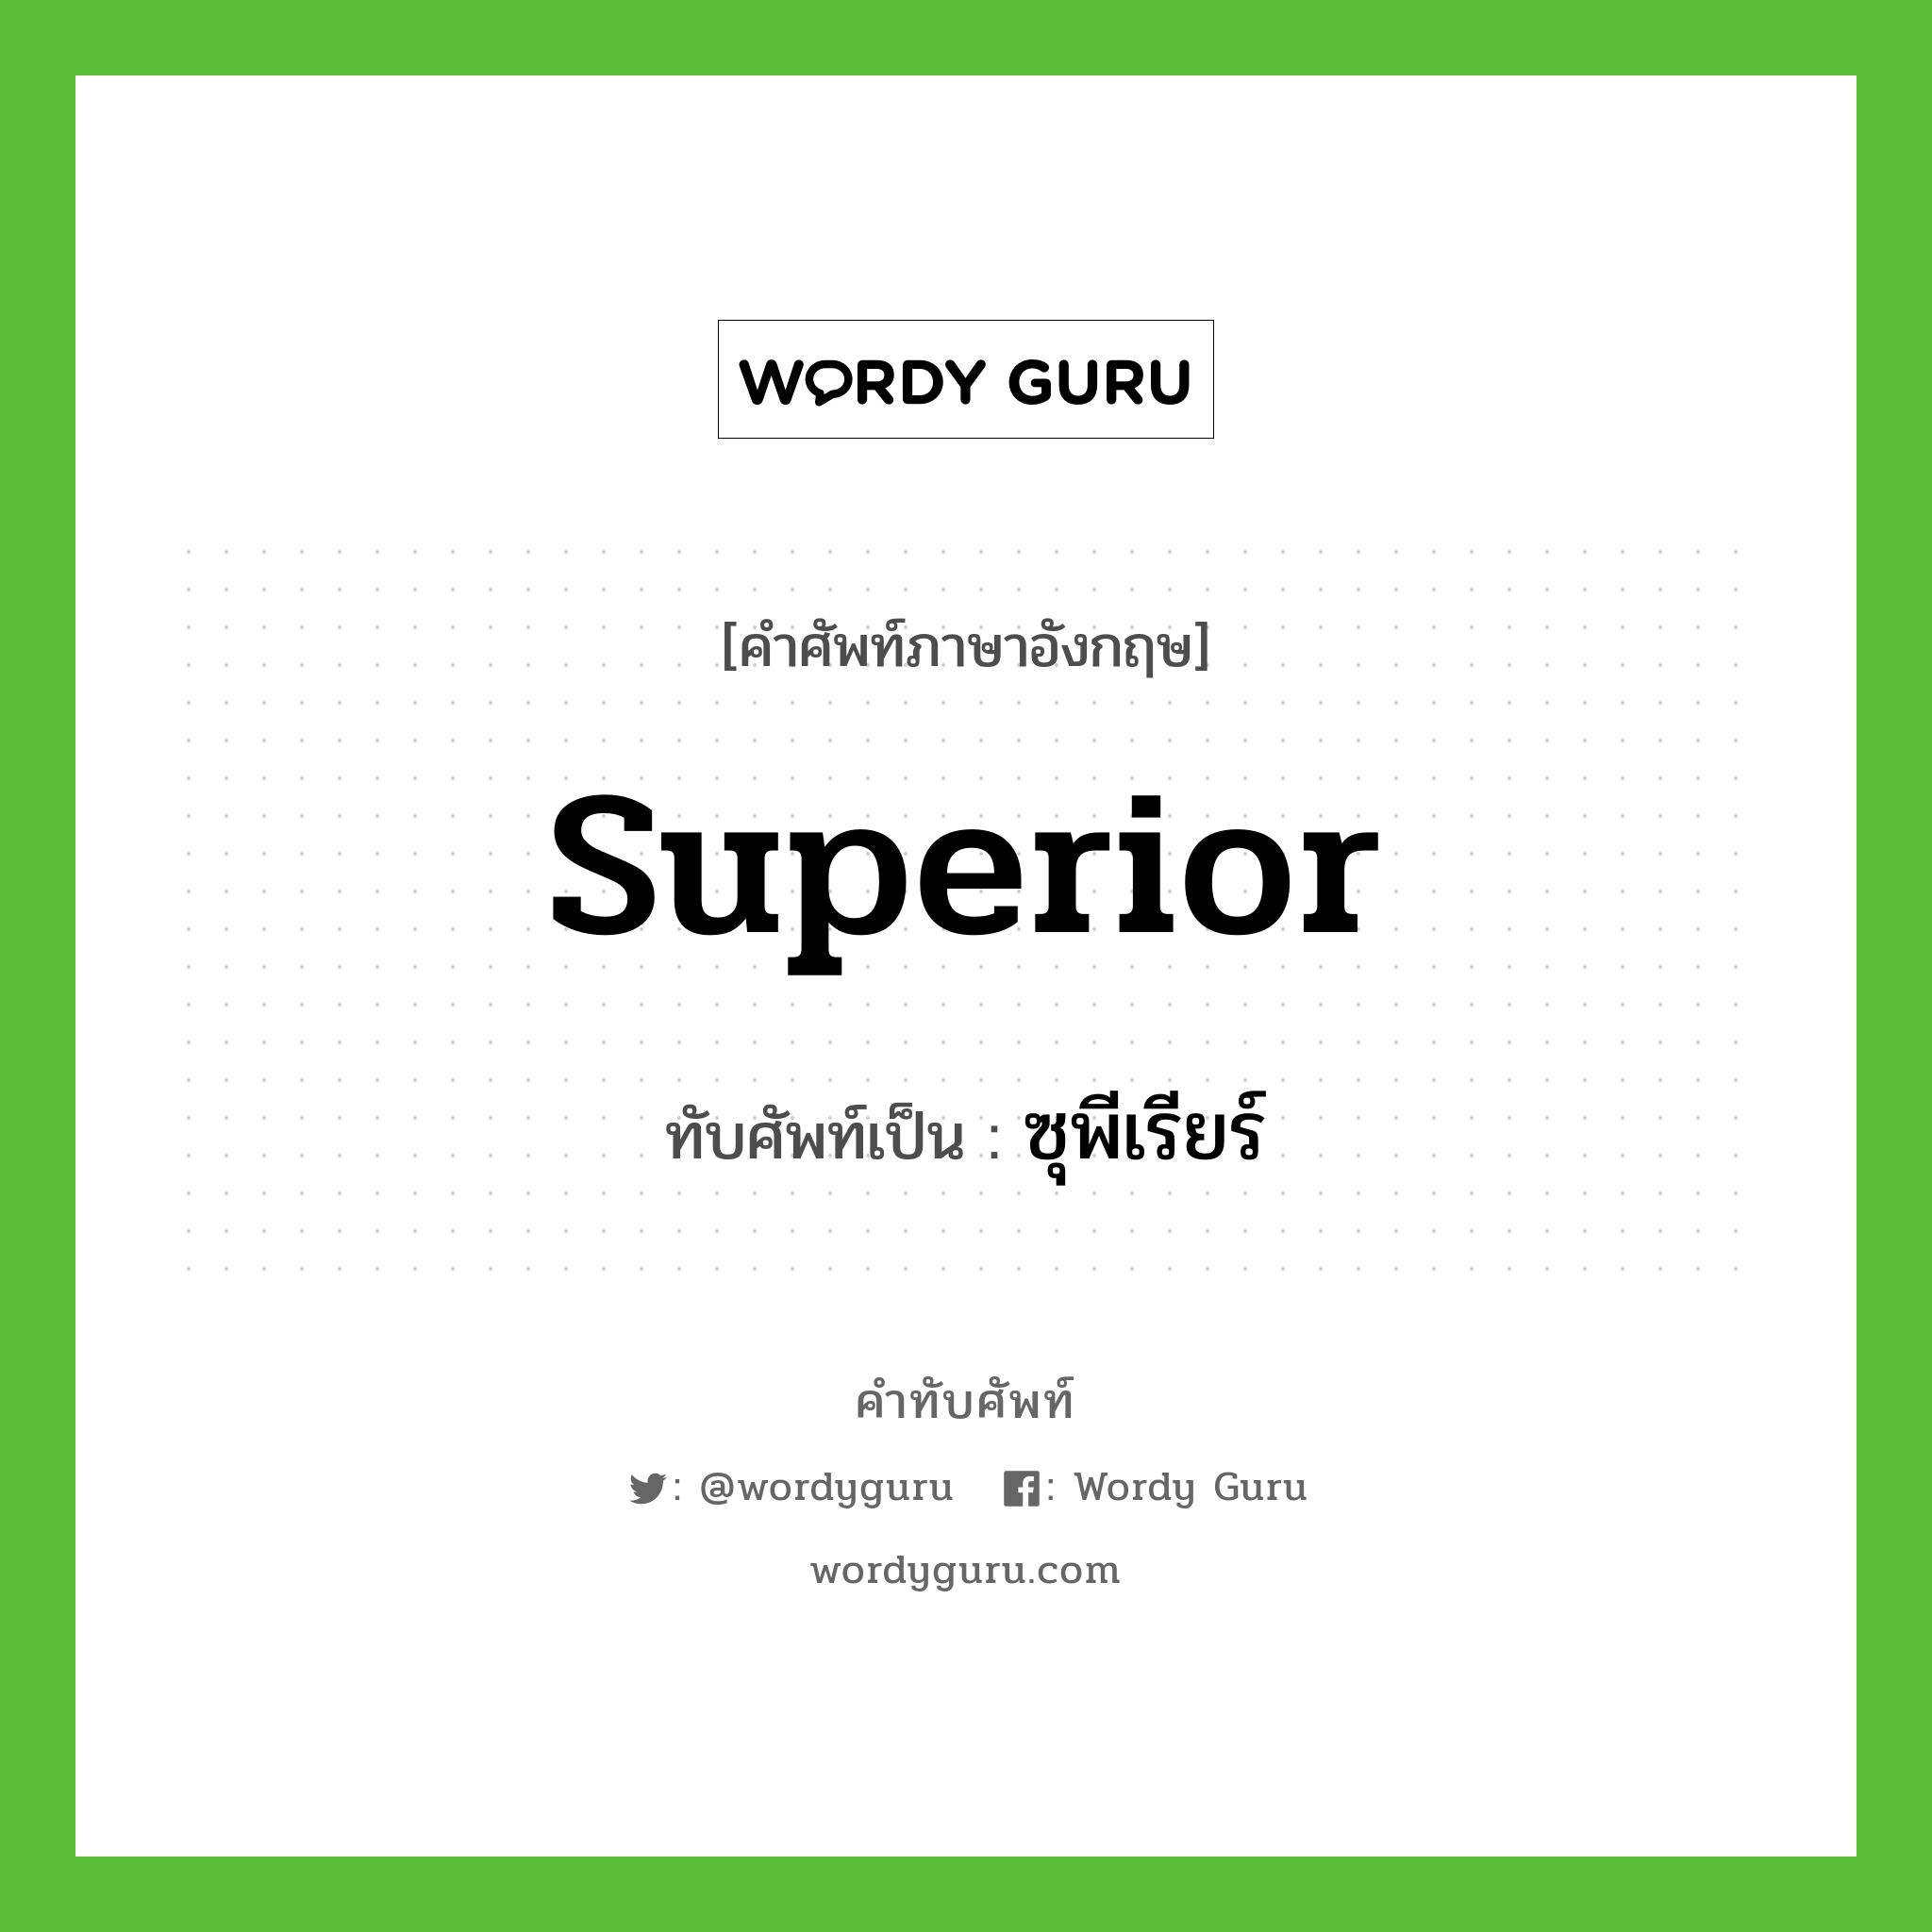 superior เขียนเป็นคำไทยว่าอะไร?, คำศัพท์ภาษาอังกฤษ superior ทับศัพท์เป็น ซุพีเรียร์